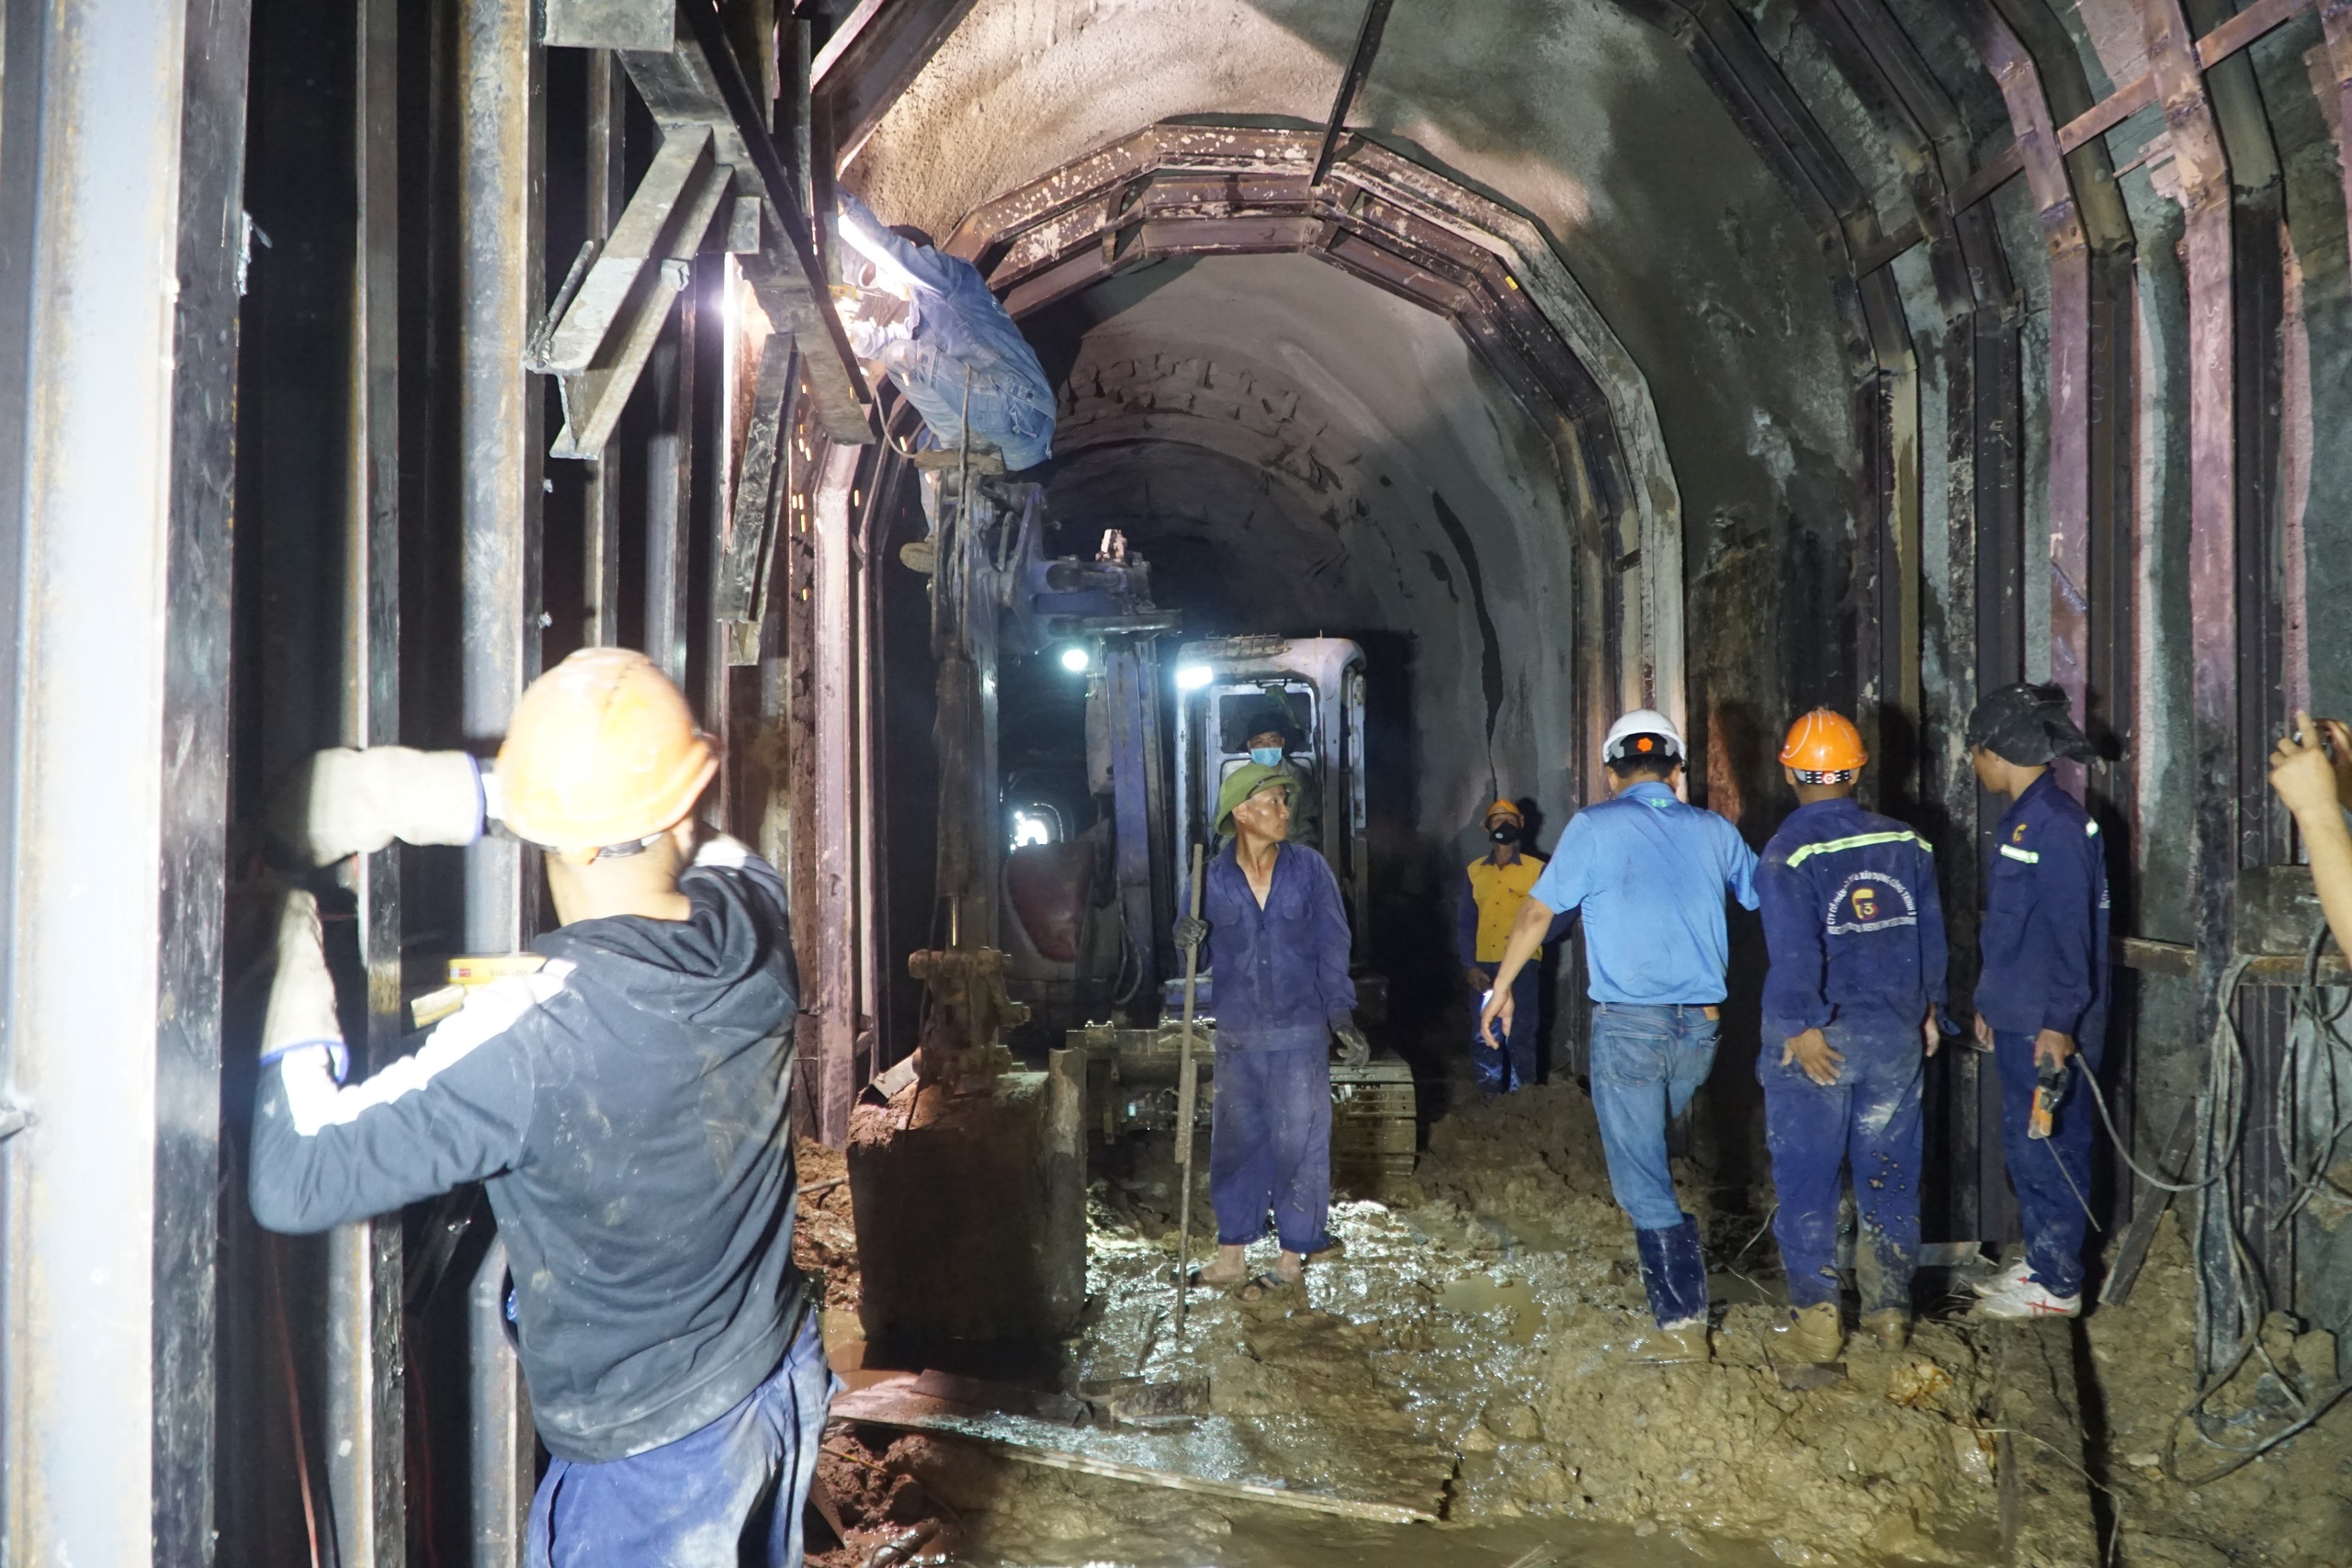 Sự cố sạt lở hầm Bãi Gió xảy ra hôm 12.4 khiến tuyến đường sắt bắc - nam tê liệt, ngành đường sắt phải sử dụng ô tô để trung chuyển hành khách cũng như hàng hóa từ ga Tuy Hòa (Phú Yên) tới ga Giã (Khánh Hòa) và ngược lại